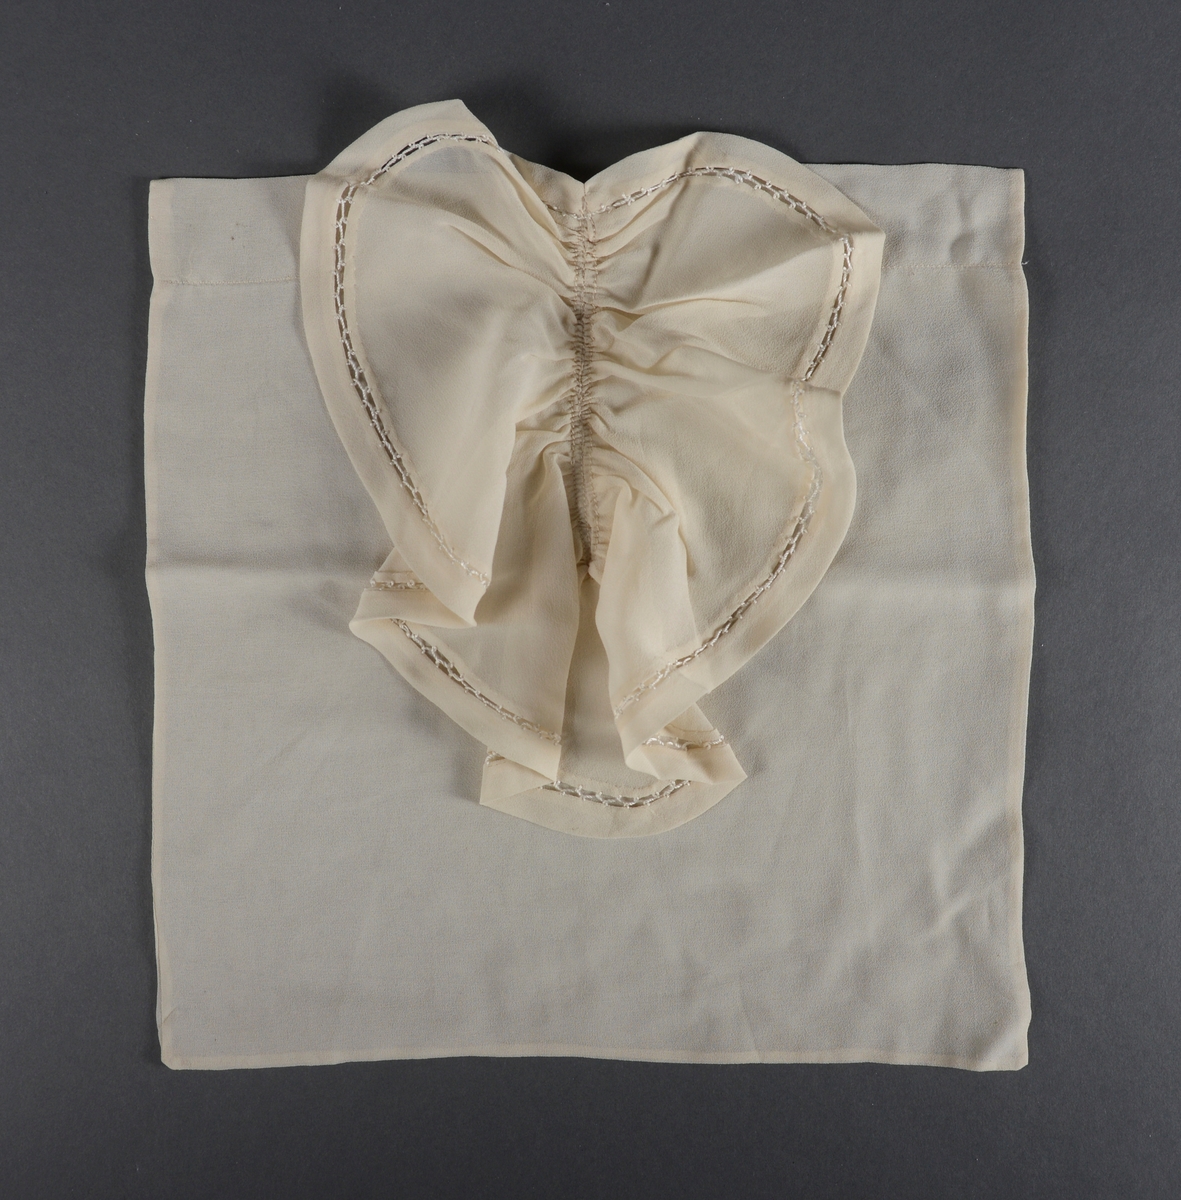 Et nesten kvadratisk skjortebryst laget av hvit chiffon. I front er det sydd på en volang som dekker nesten hele brystet. På volangen er det en heklet kant.